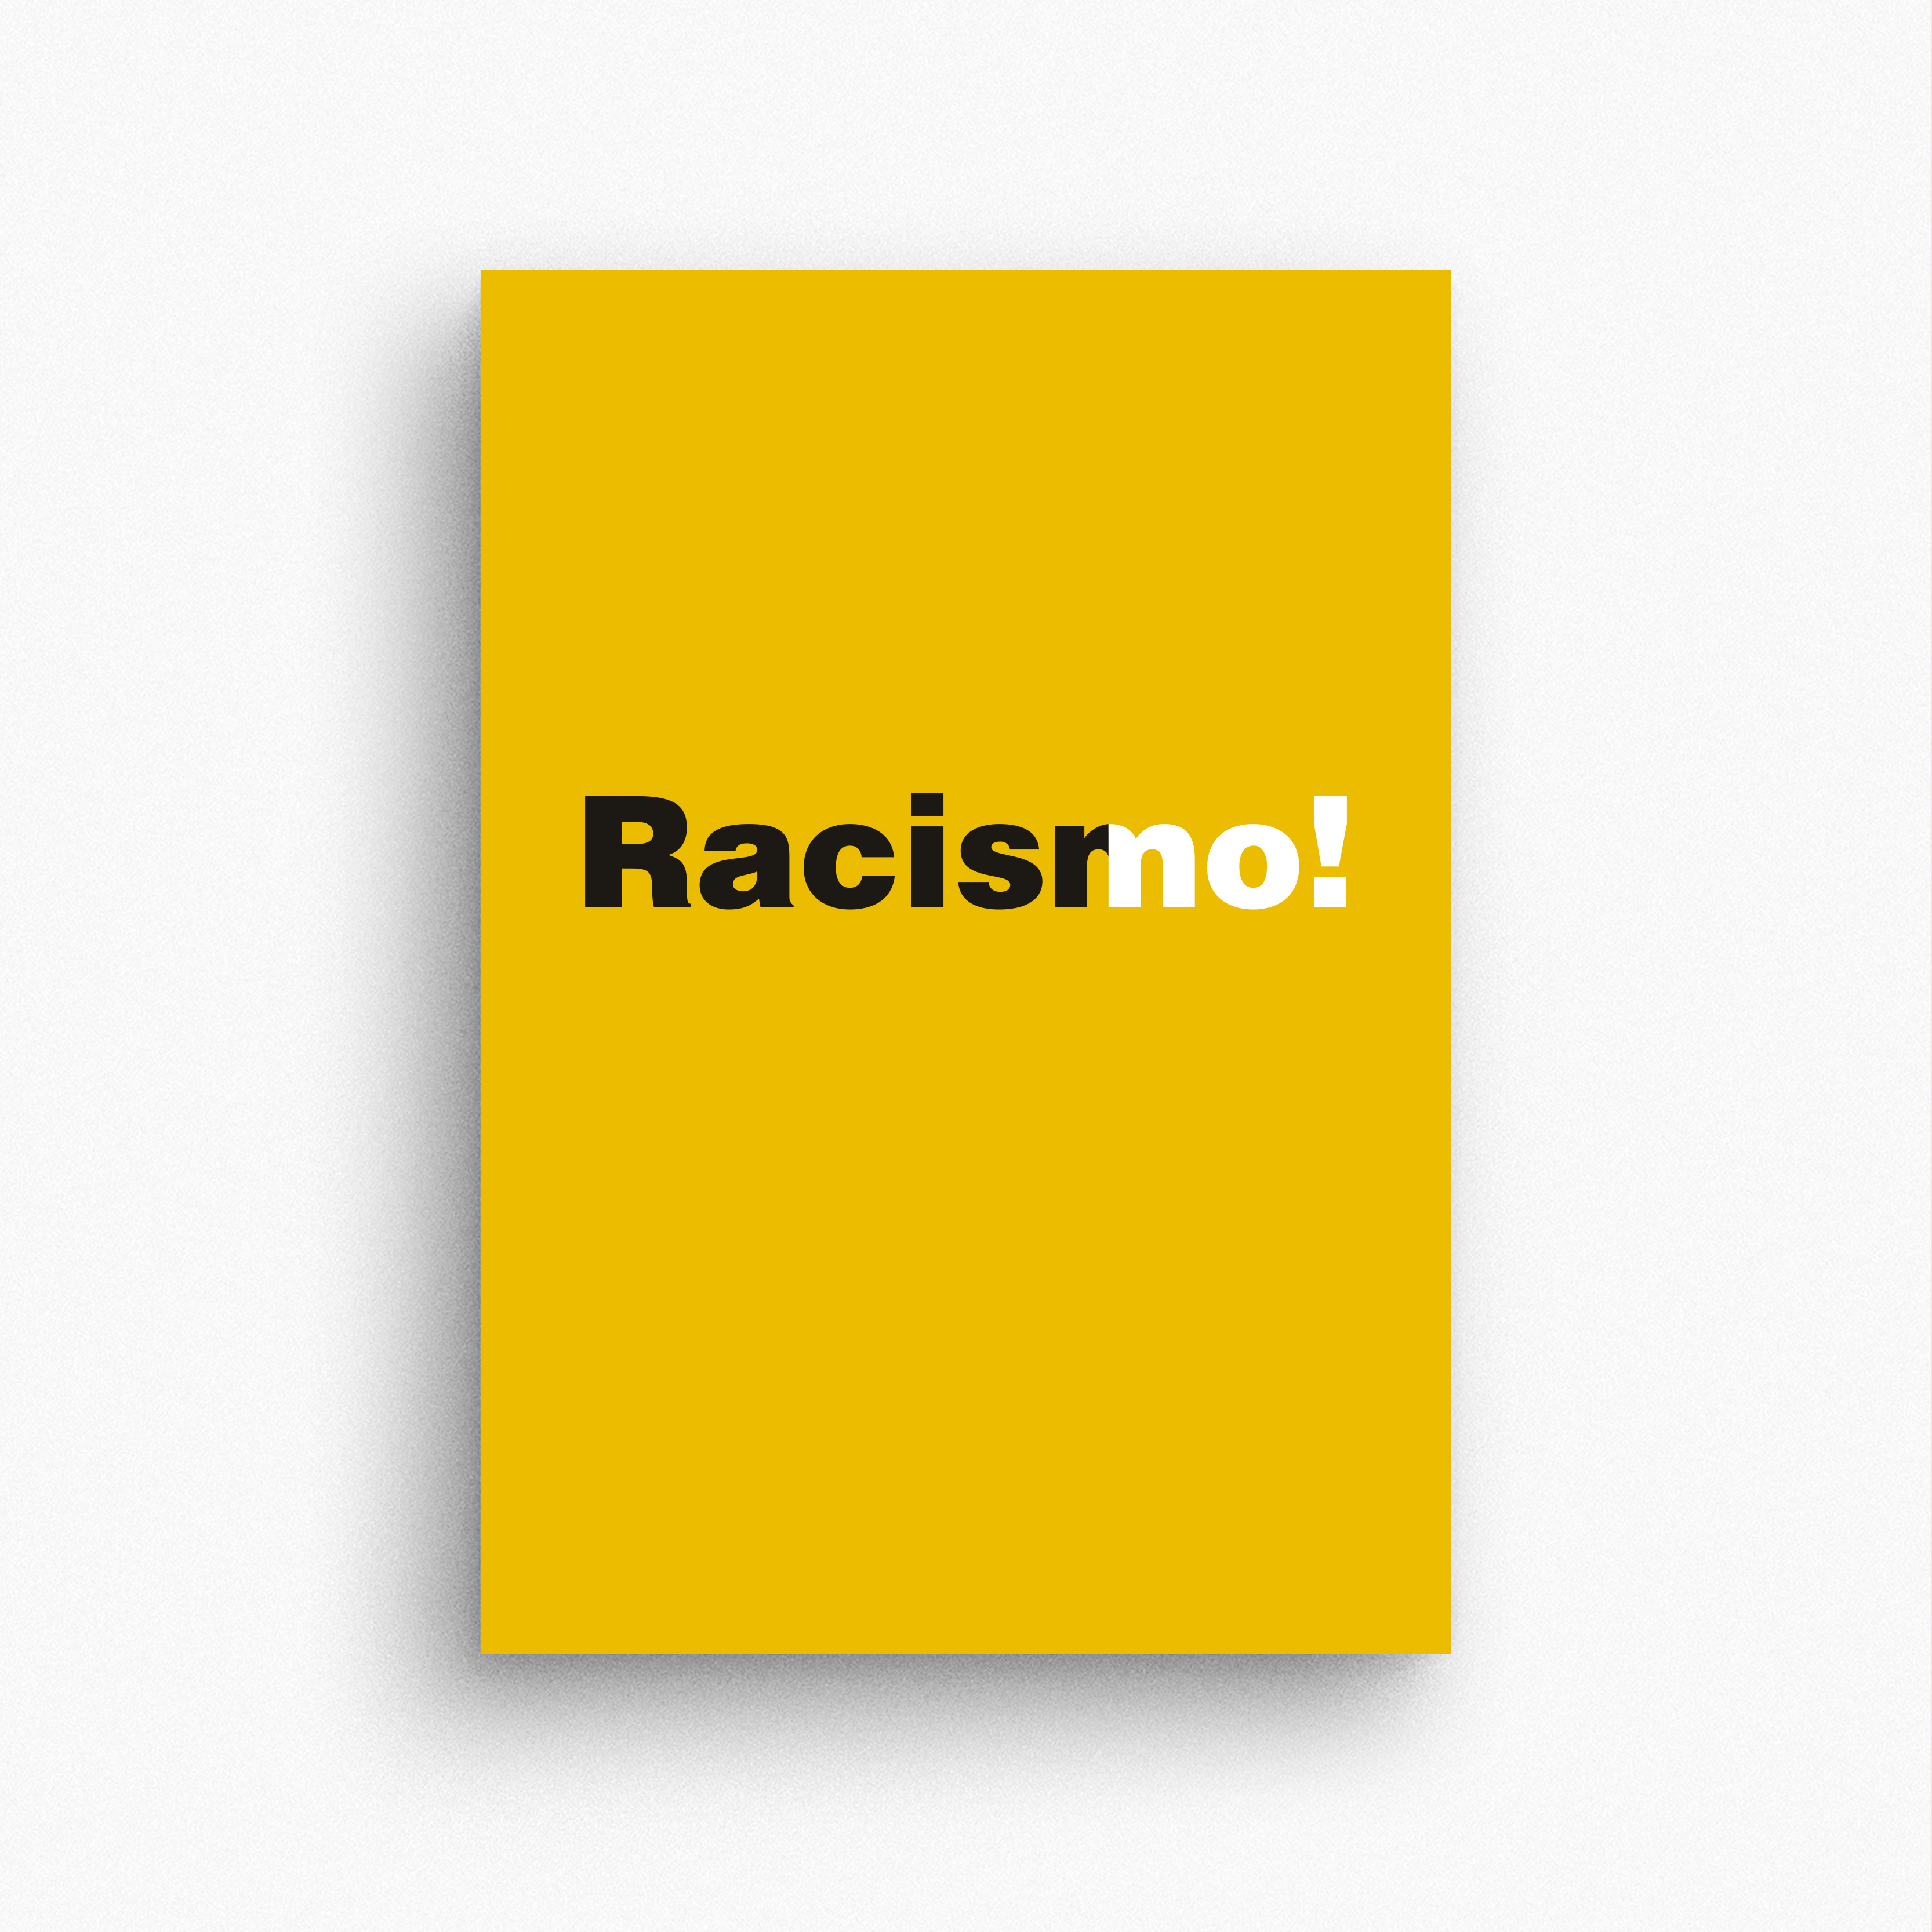 Racisno! by Carmen Bustillo Bernaldo de Quirós - Creative Work